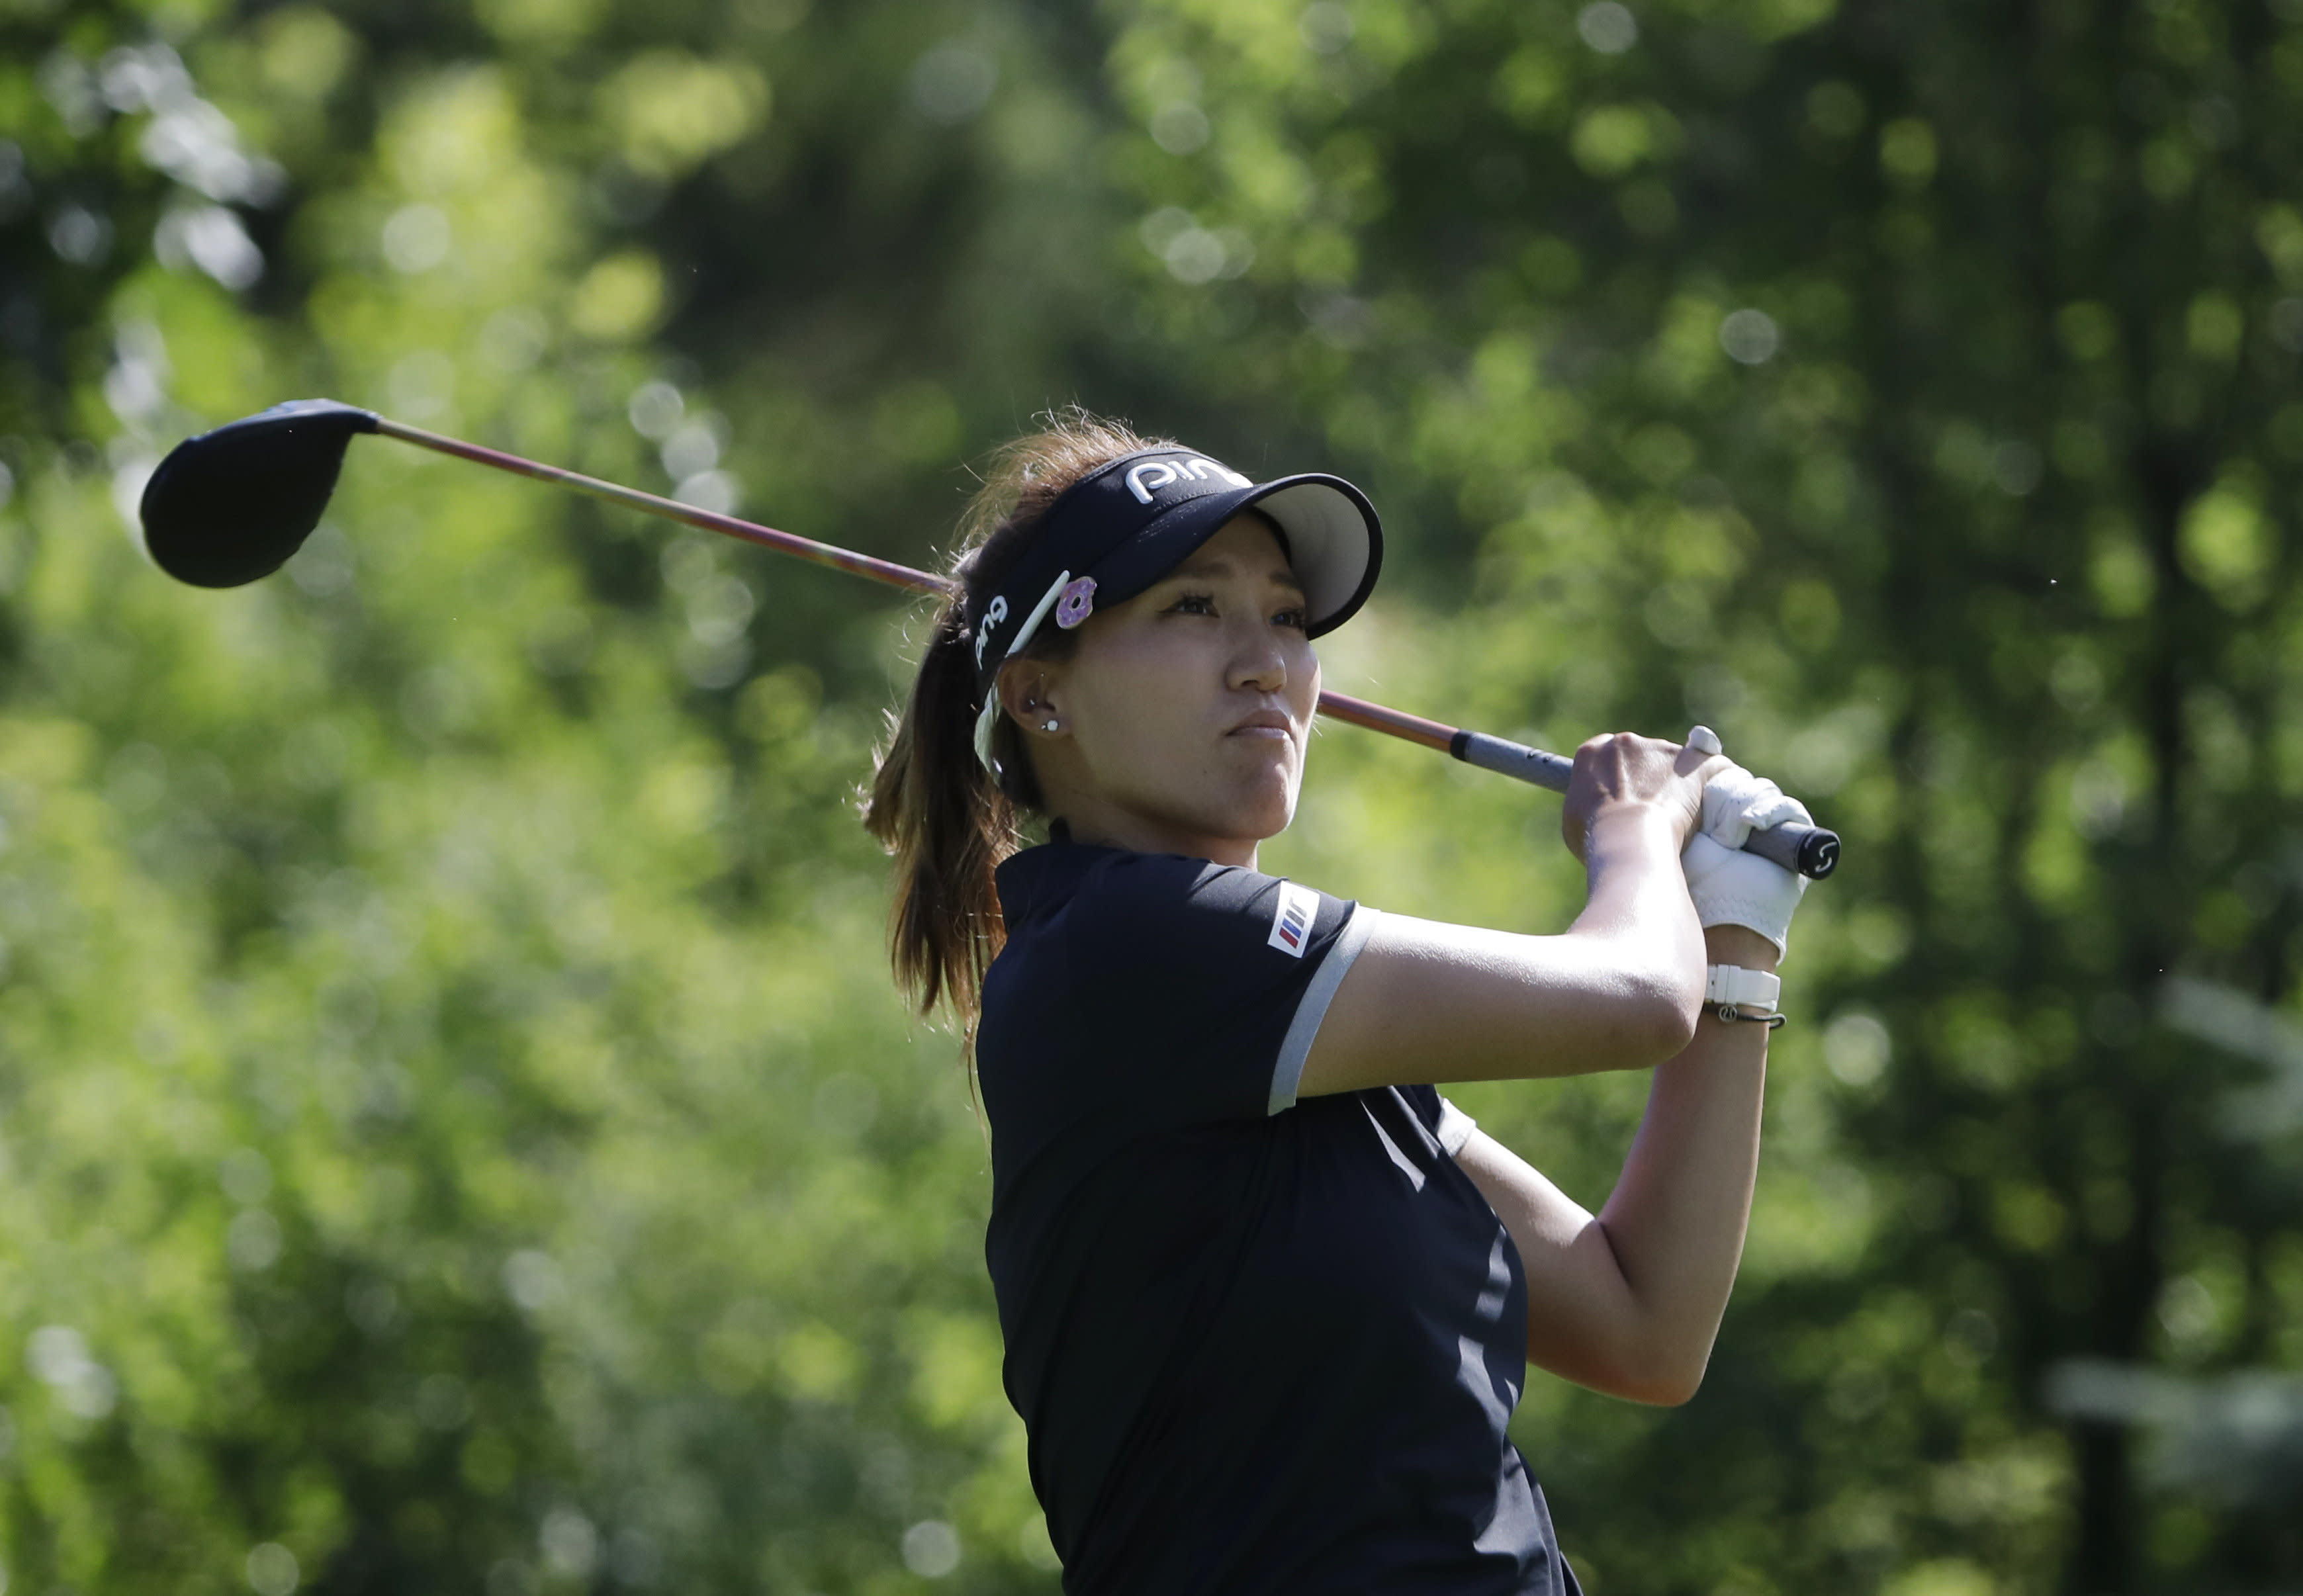 Golfer's clubs stolen ahead of LPGA major